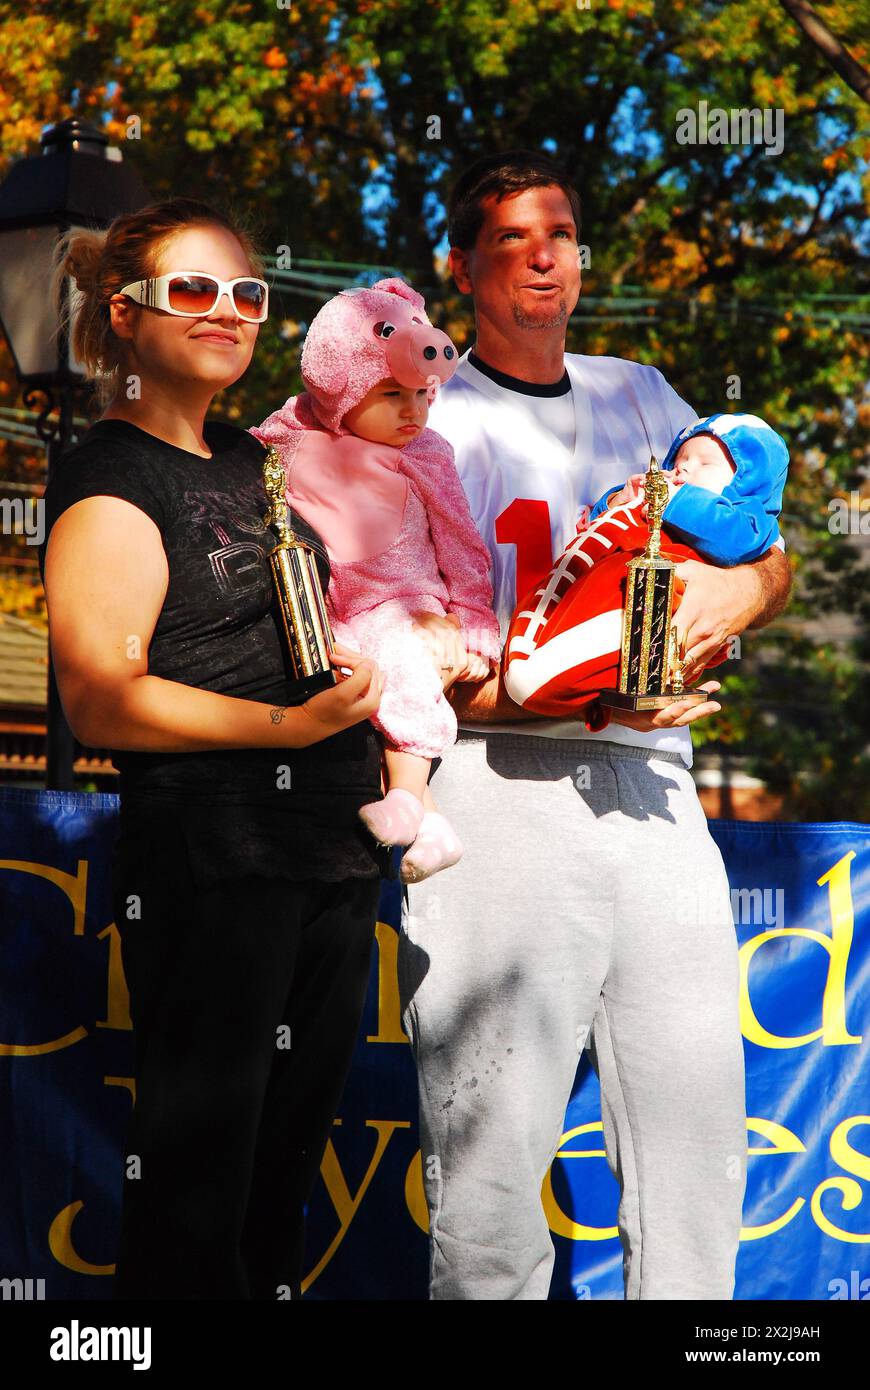 Une famille montre ses trophées lors d'un concours de costumes d'Halloween Banque D'Images